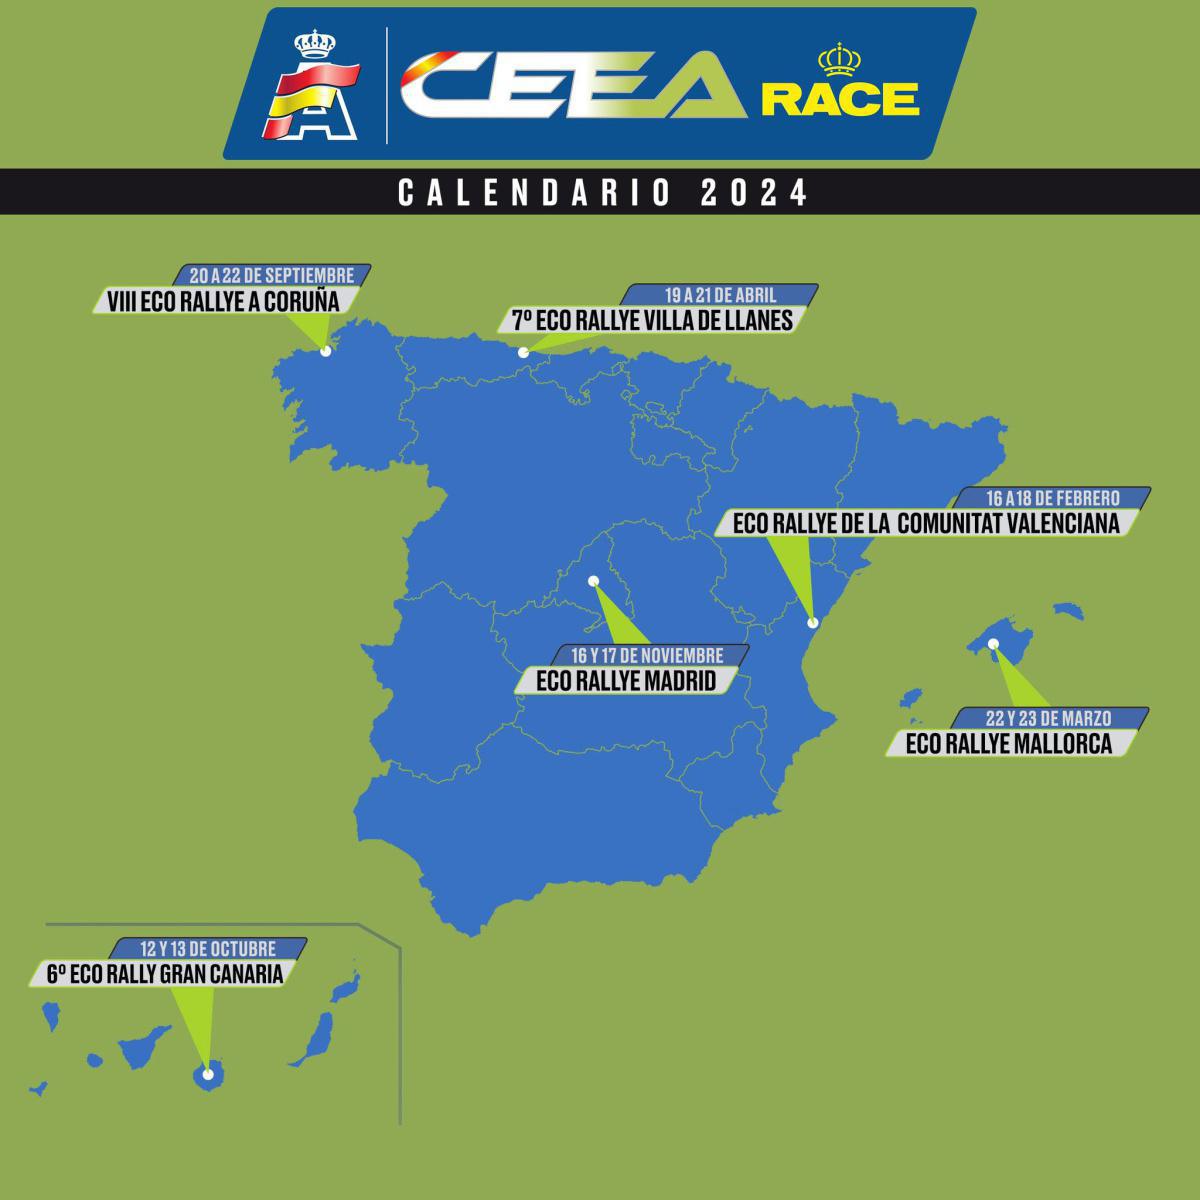 CEEA RACE 2024 - Calendario